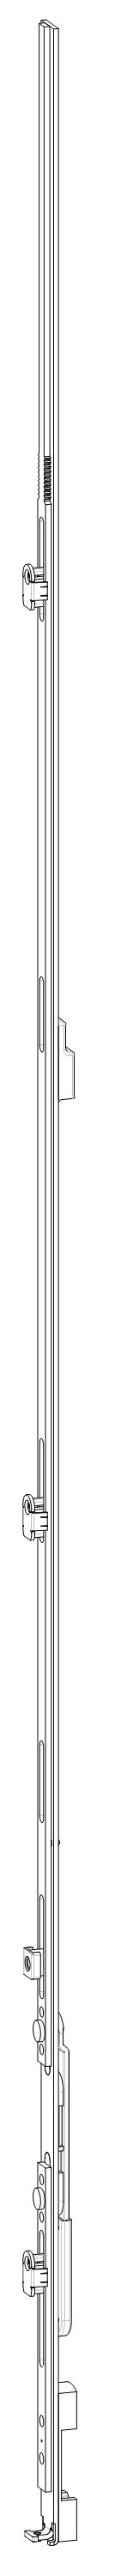 GU-ITALIA -  Catenaccio UNI-JET asta a leva altezza maniglia fissa per seconda anta - gr / dim. 1190 - alt. man. LEVA ZH - lbb/hbb 1101 - 1350